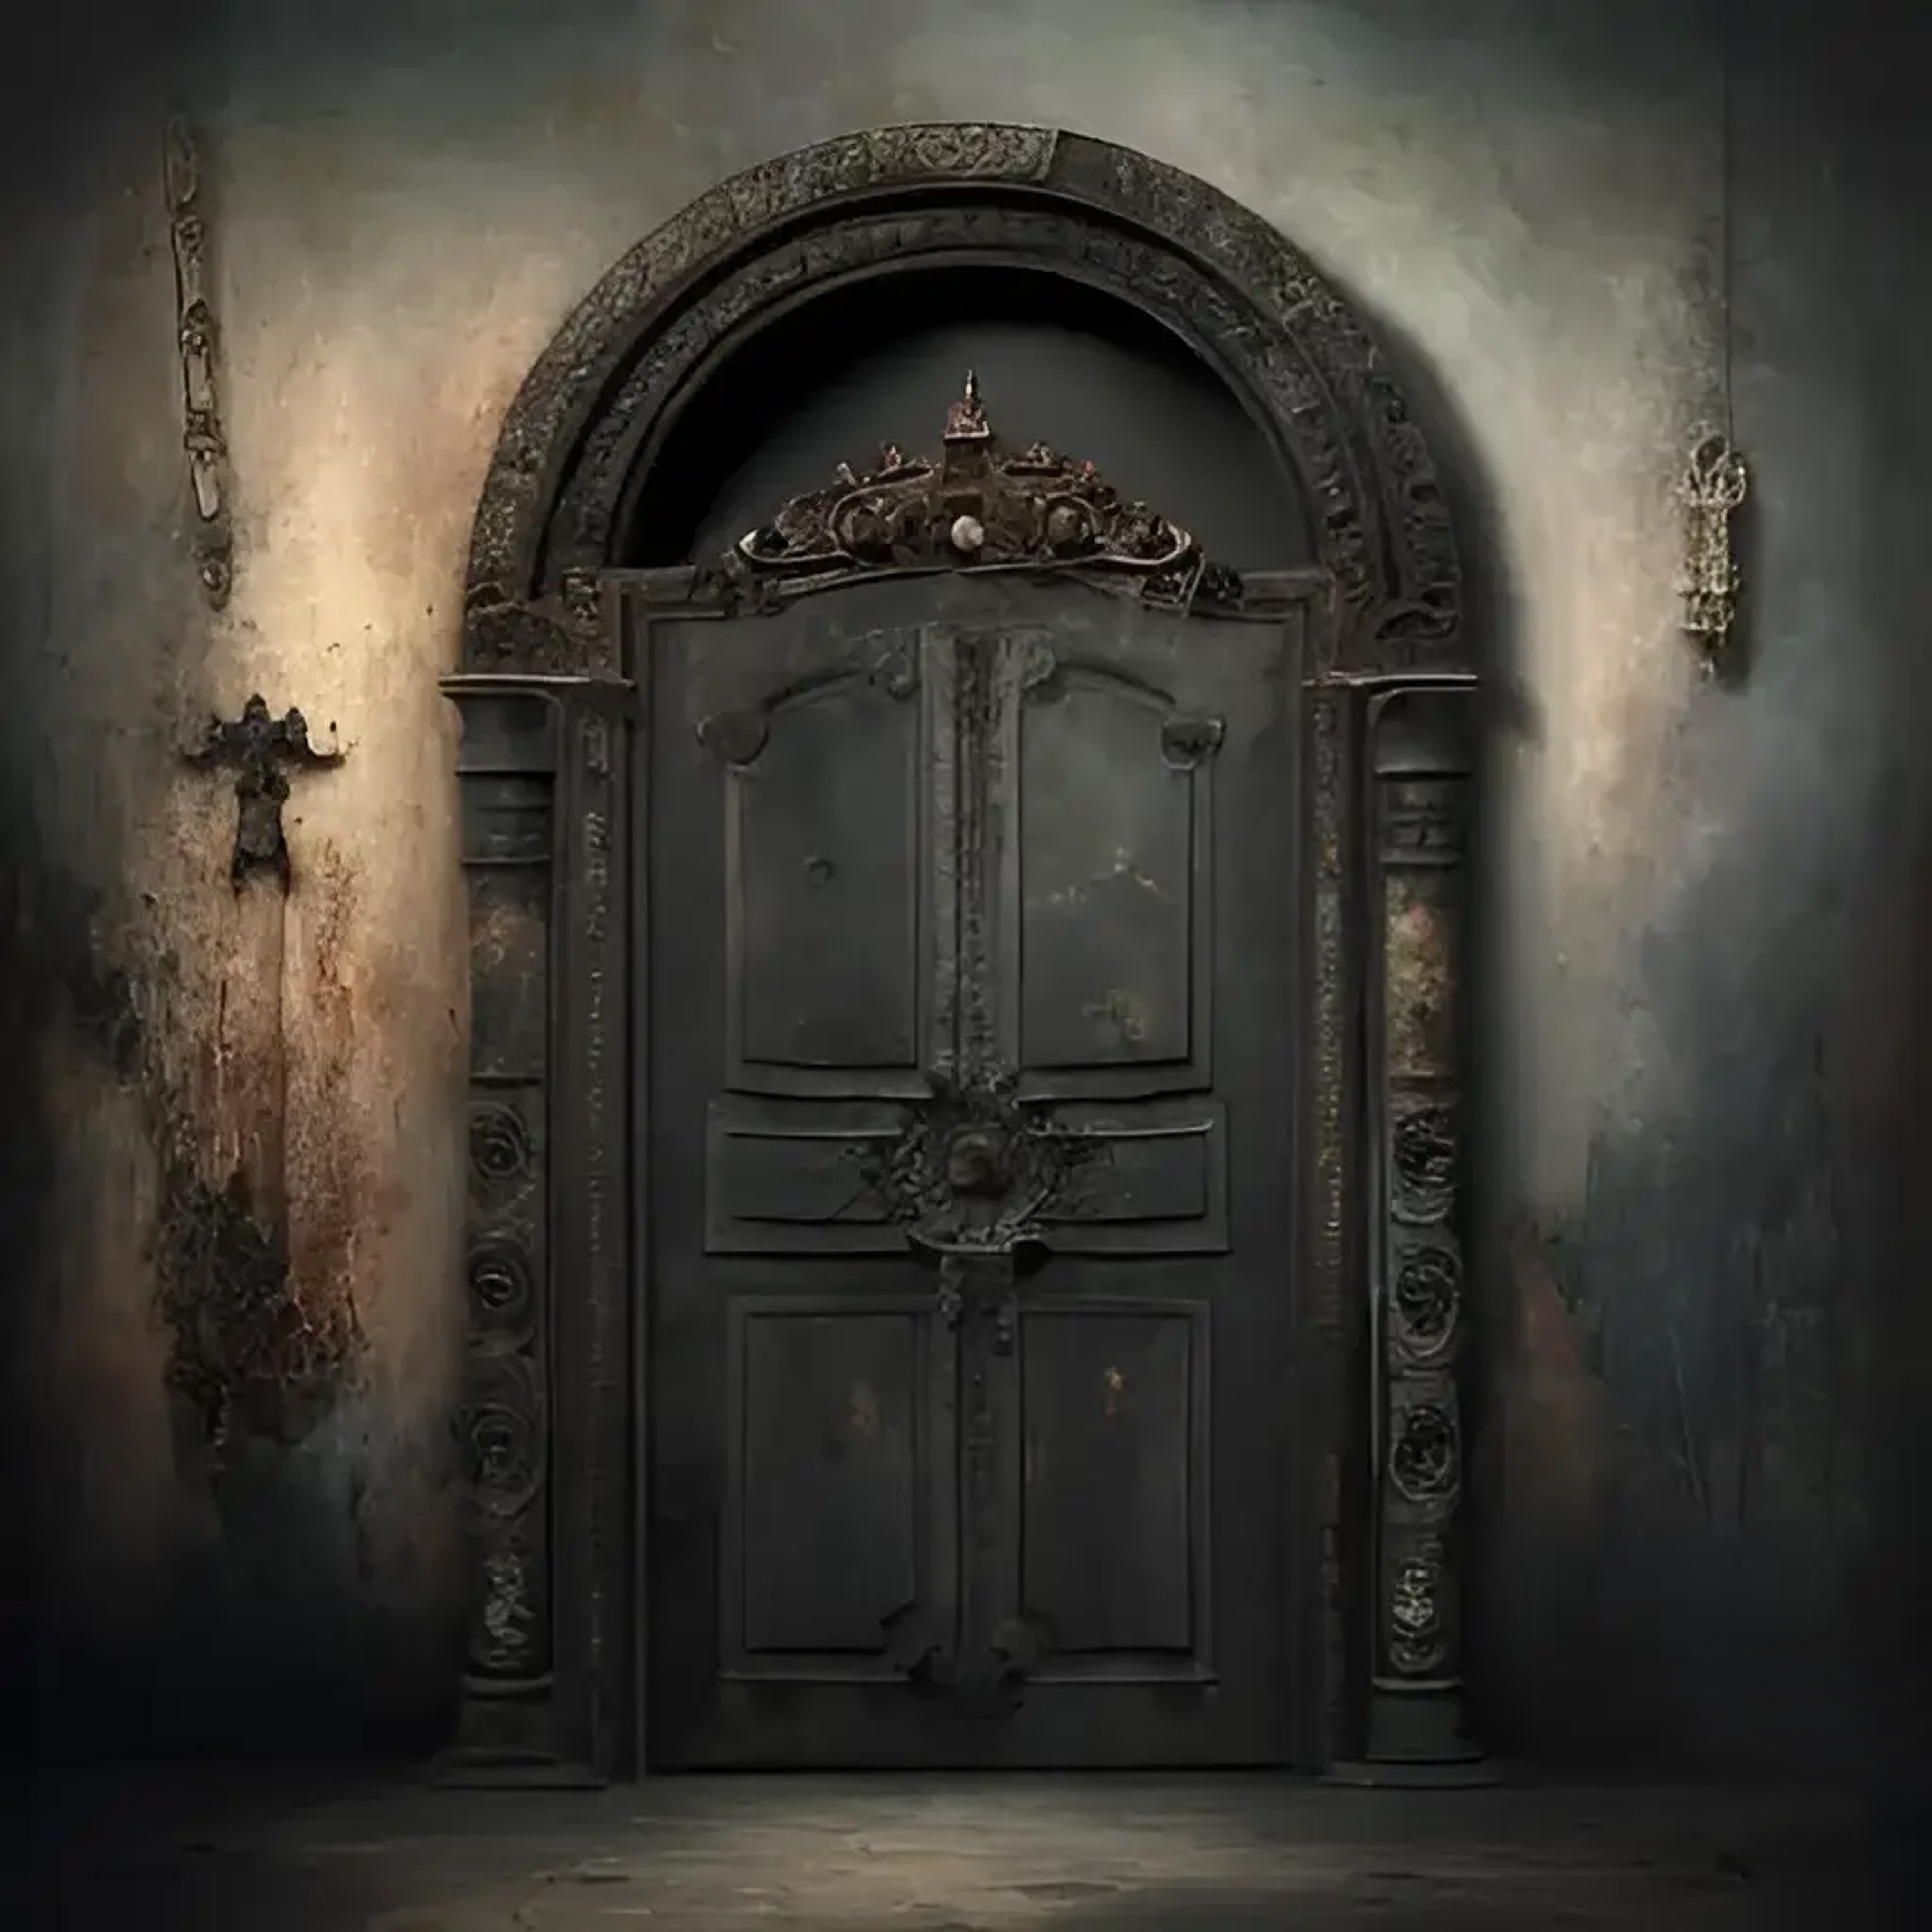 VI - The door of XNLKX